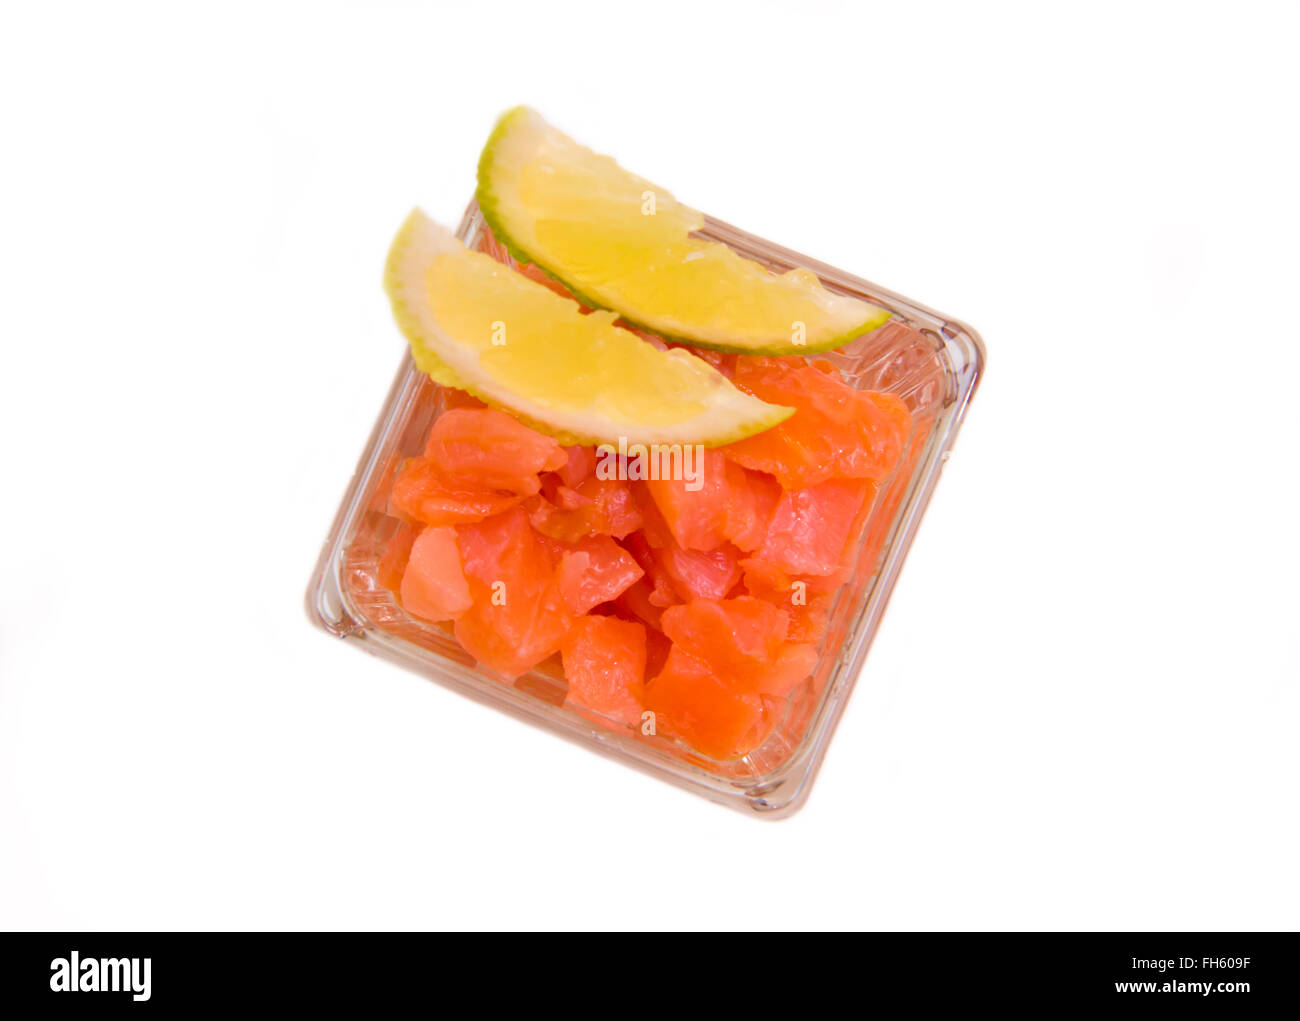 Cubetti di salmone affumicato su sfondo bianco visto da sopra Foto Stock